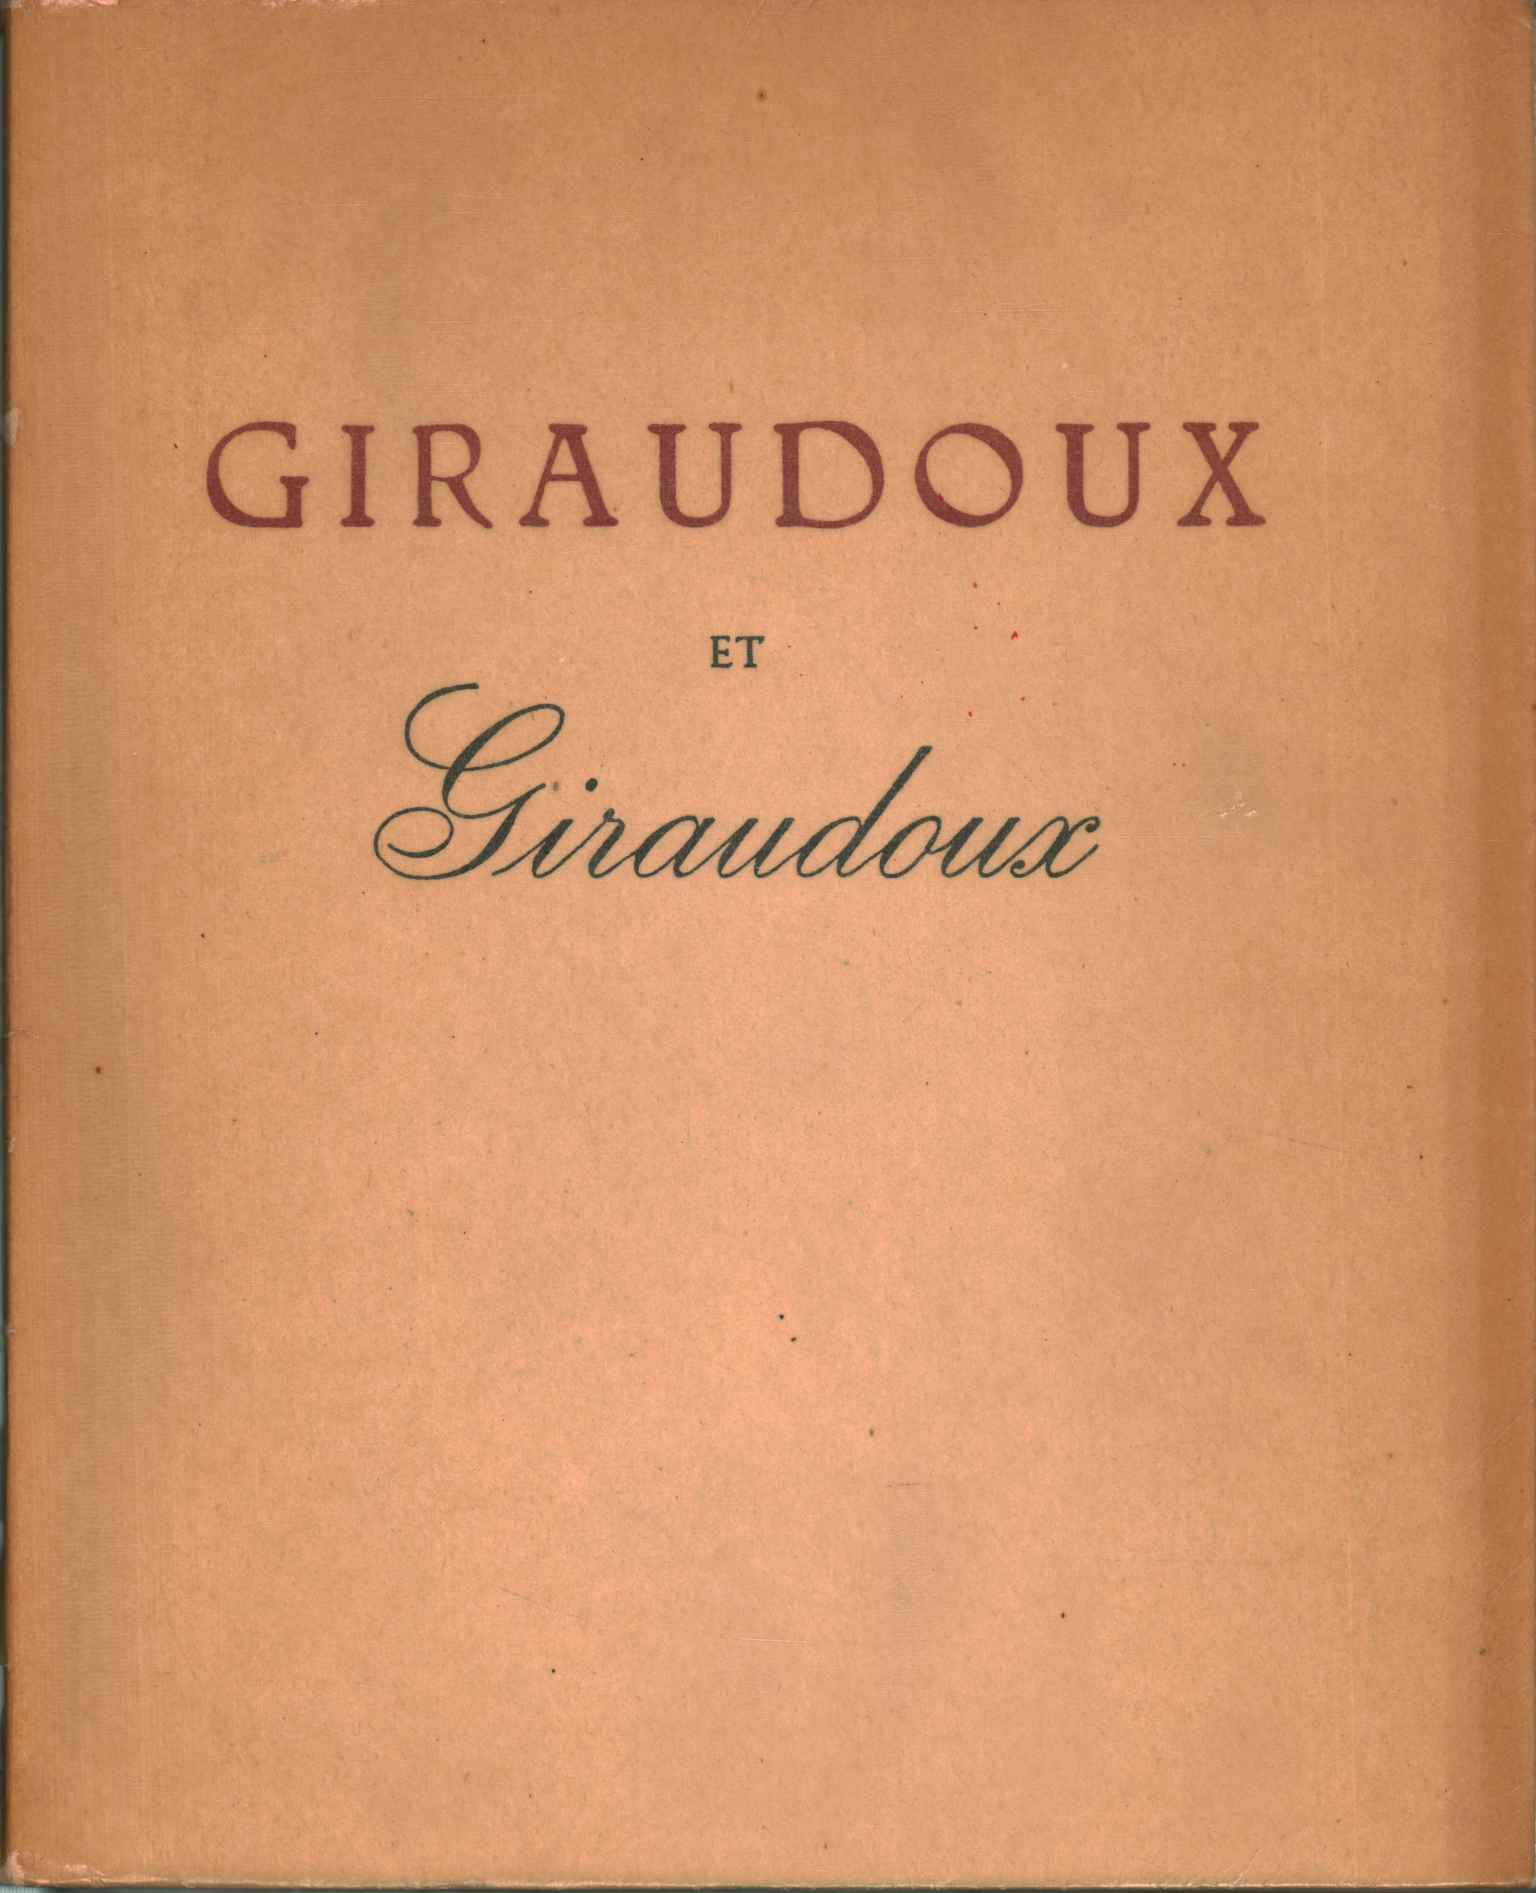 Giraudoux und Giraudoux